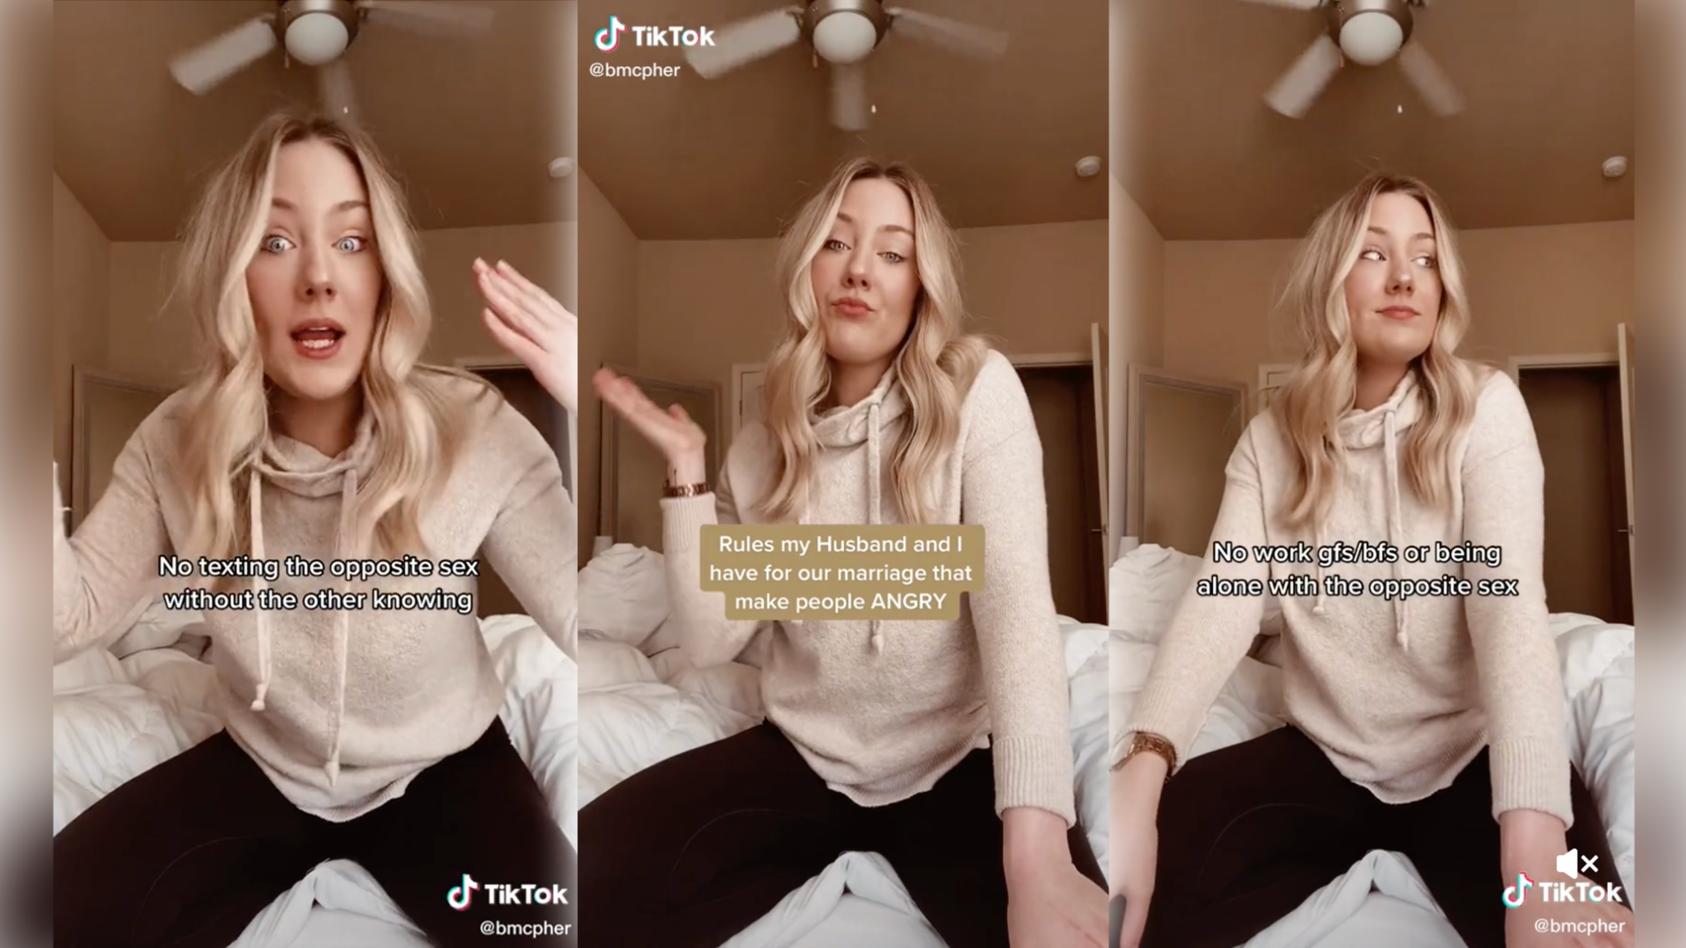 Bailey McPherson sorgt mit ihrem TikTok Video für ziemlich viel Aufmerksamkeit. In zwei Videos teilt die Mutter konkrete Regeln, die ihr Mann in der Ehe zu befolgen hat. Die User rasten aus.